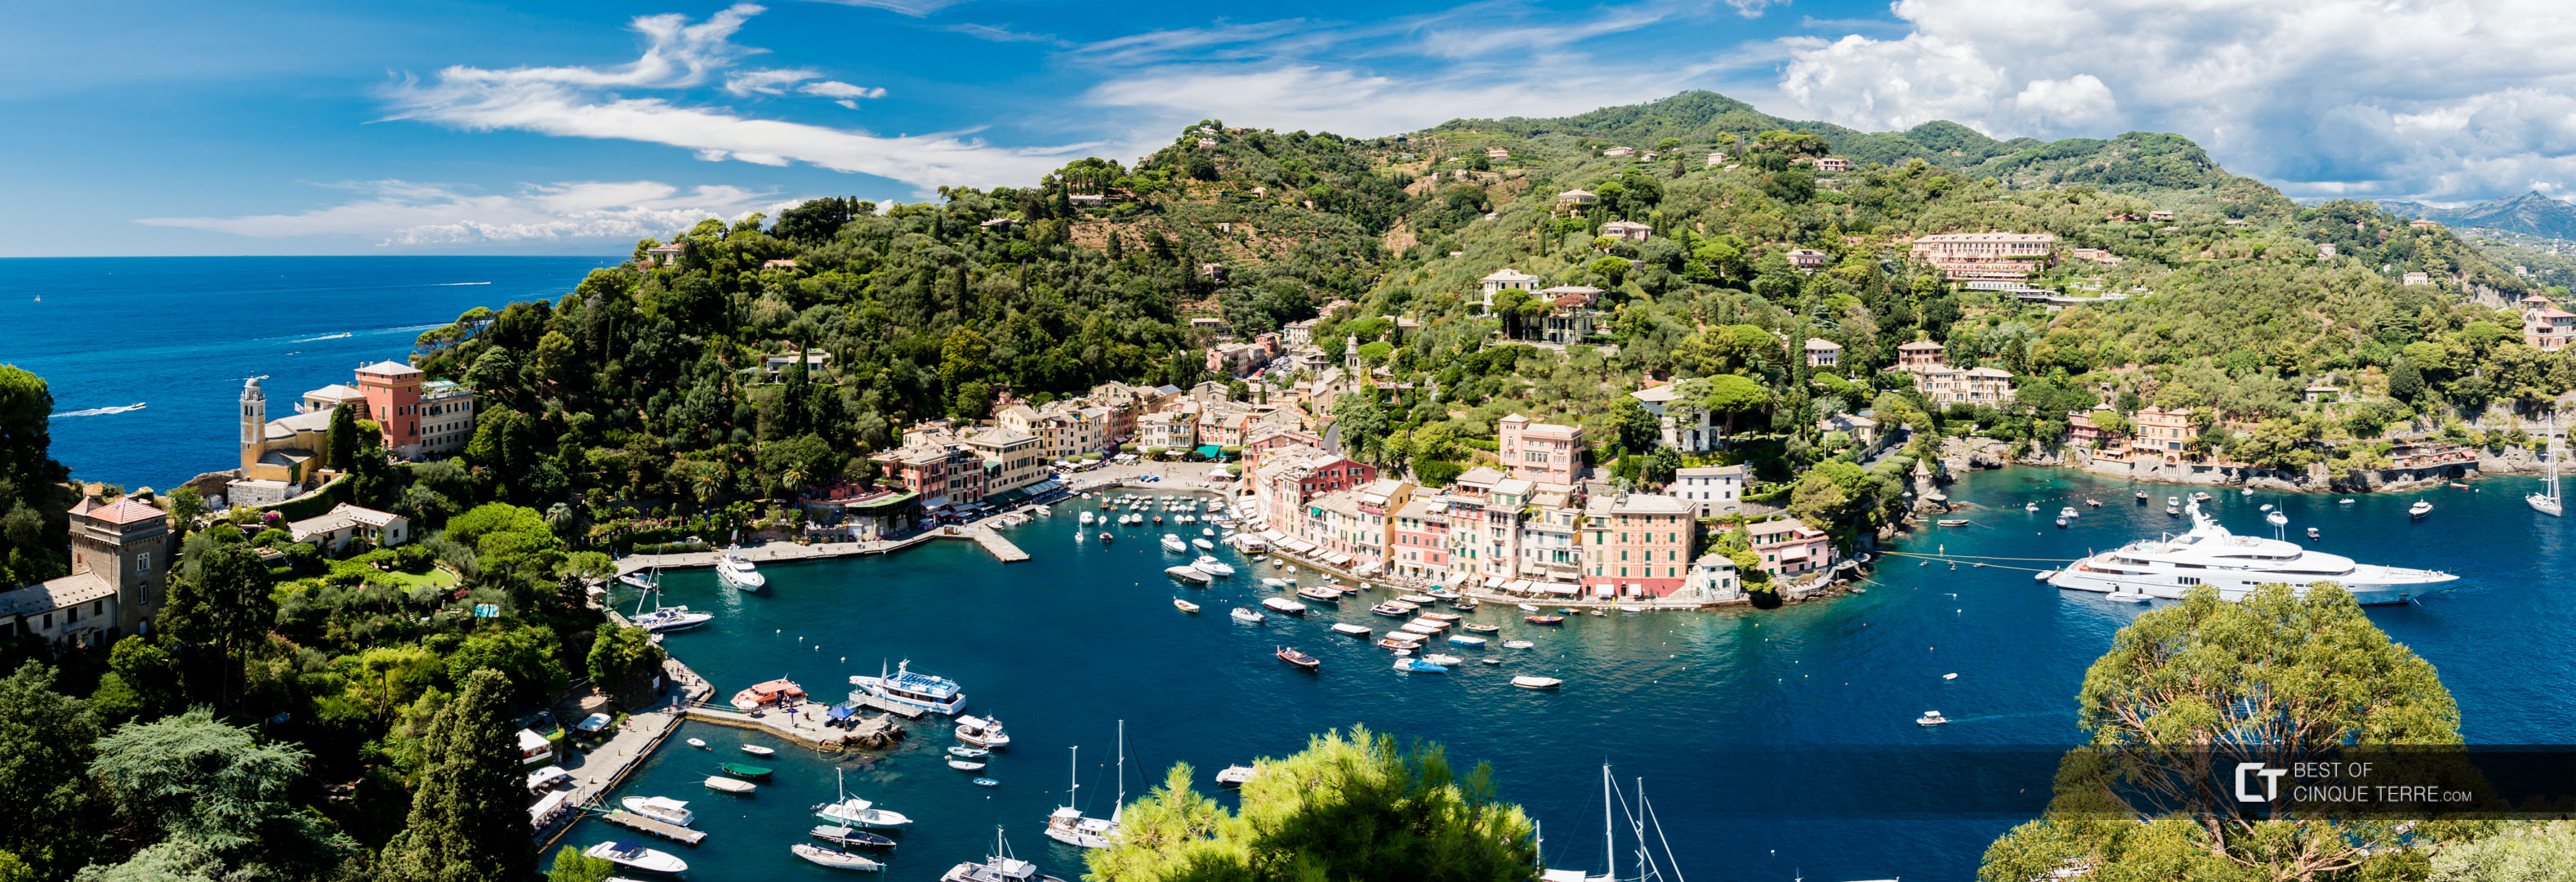 Where Is Portofino Located